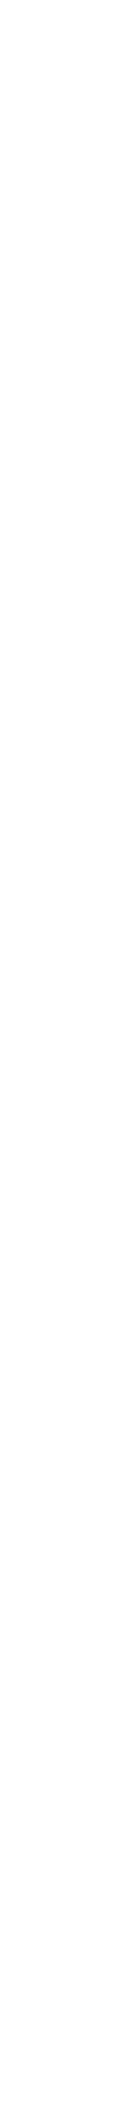 подпись: наименование группы пород граниты базальты
вулканические туфы
известняки
мраморы
песчаники
кварциты
гипсовые породы
